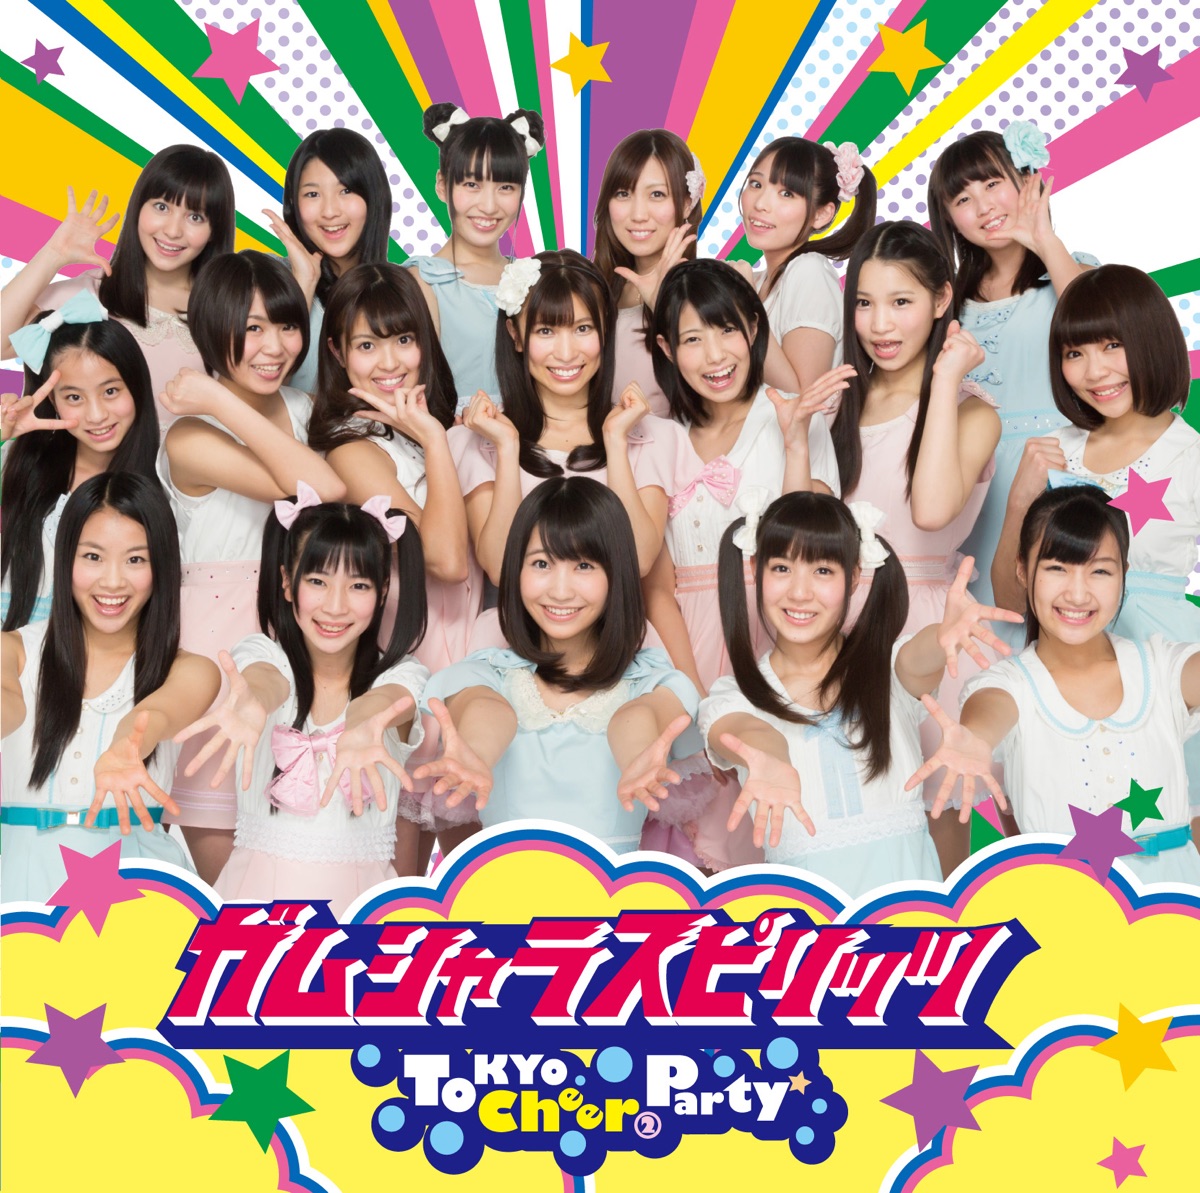 Tokyo Cheer Partyの「進め!フレッシュマン(タイプC) - Single」をApple Musicで